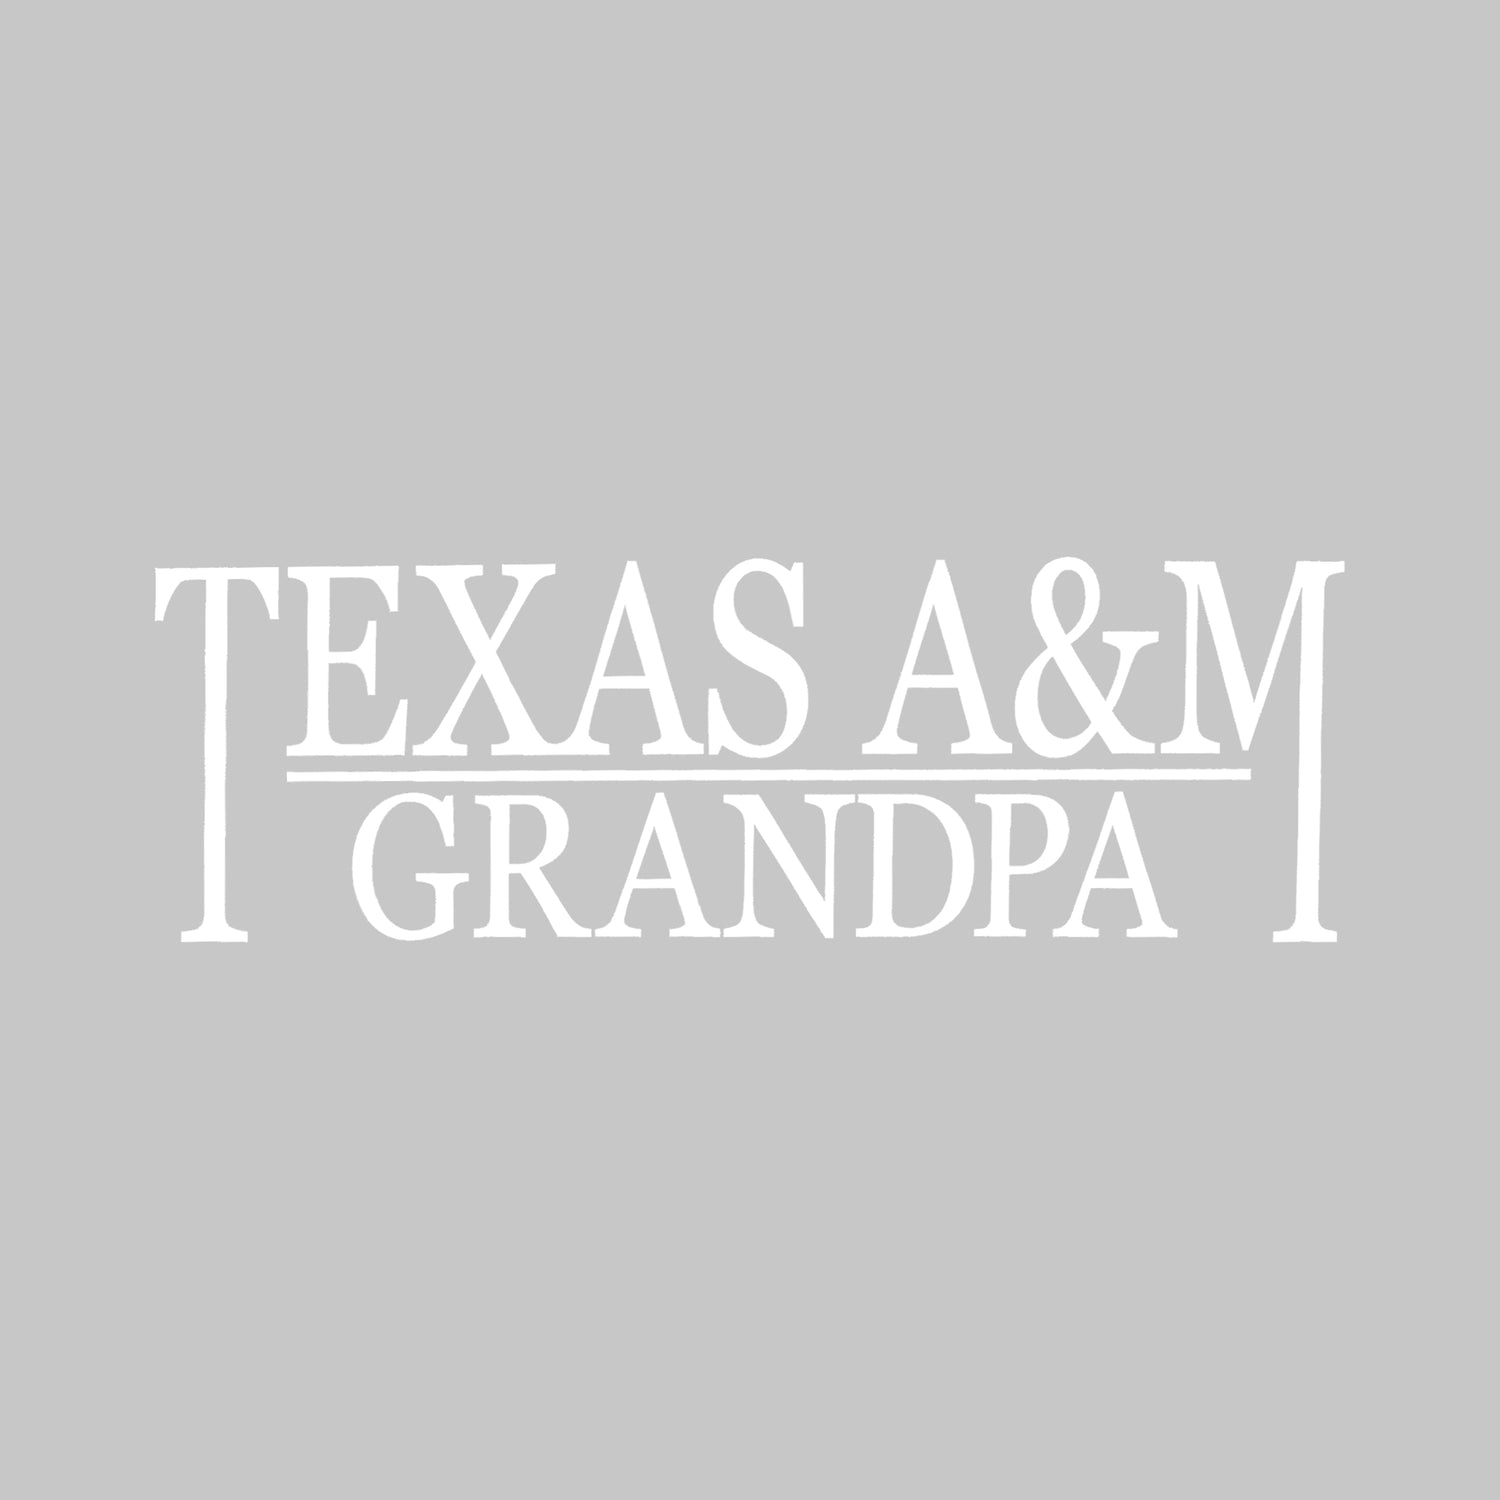 Texas A&M Grandpa Vinyl Decal